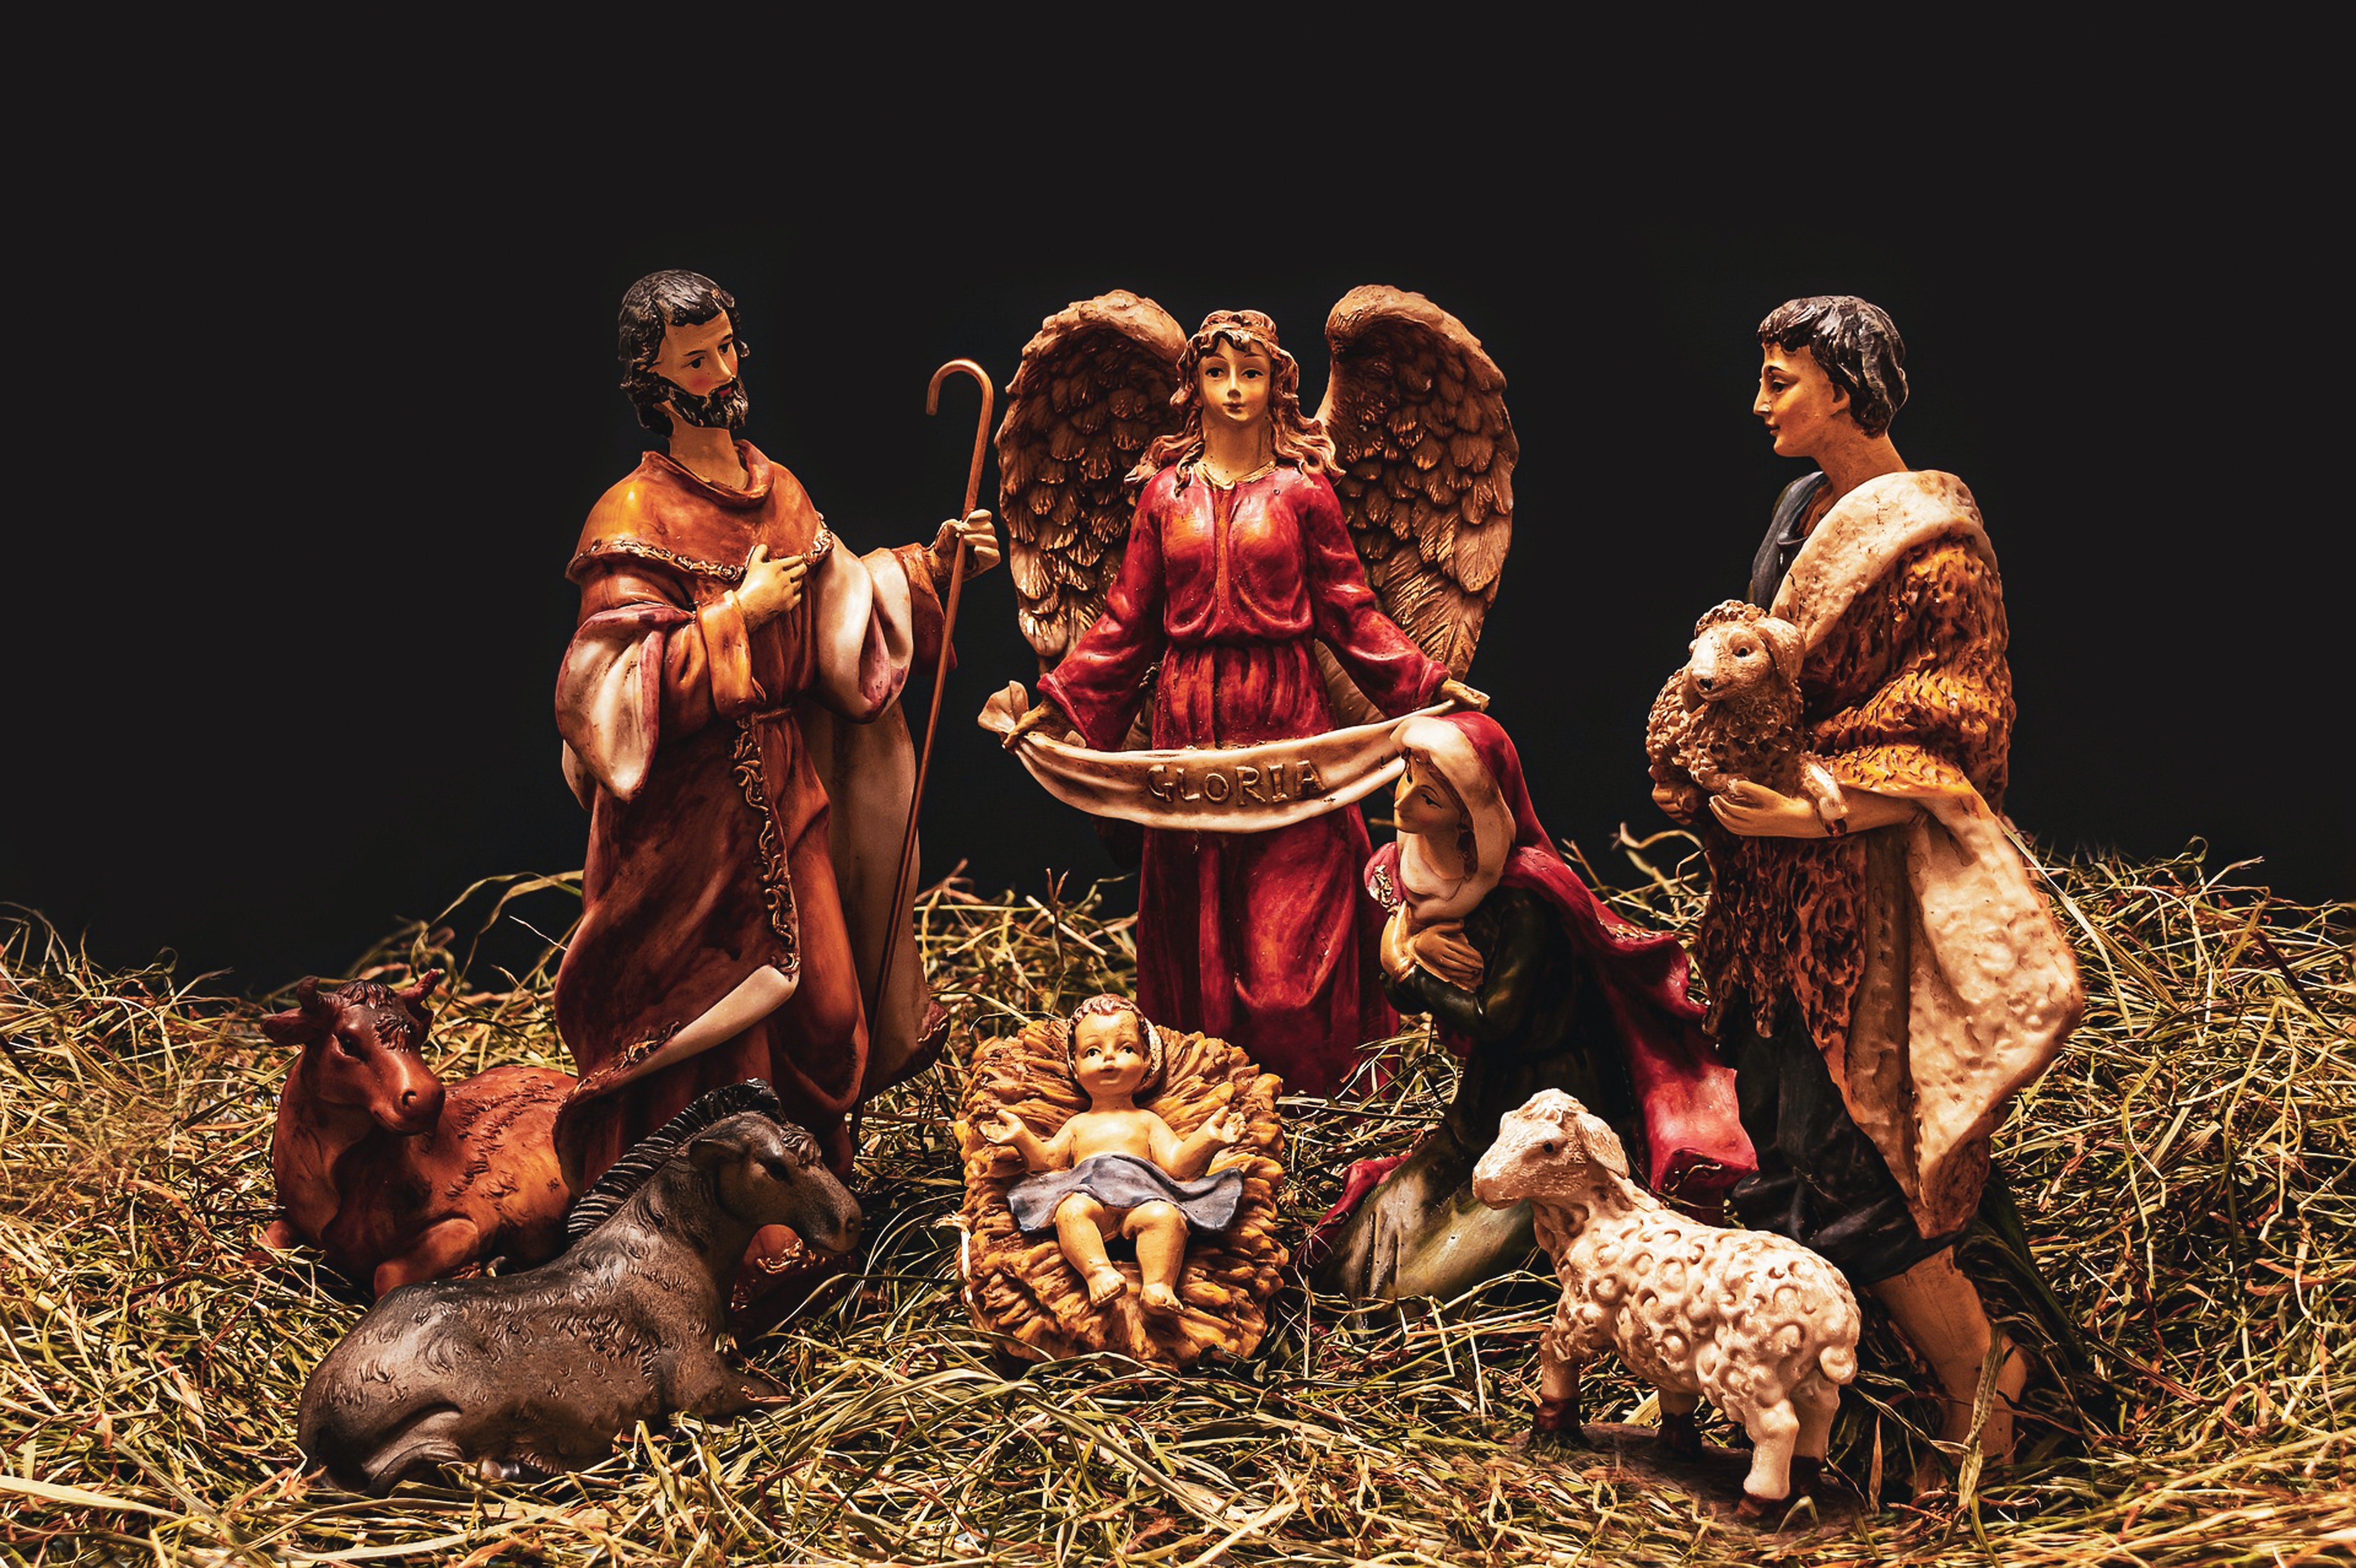 Darstellung einer Krippe mit dem neugeborenen Jesus, seinen Eltern Maria und Josef, umgeben von Tieren und einem Engel.